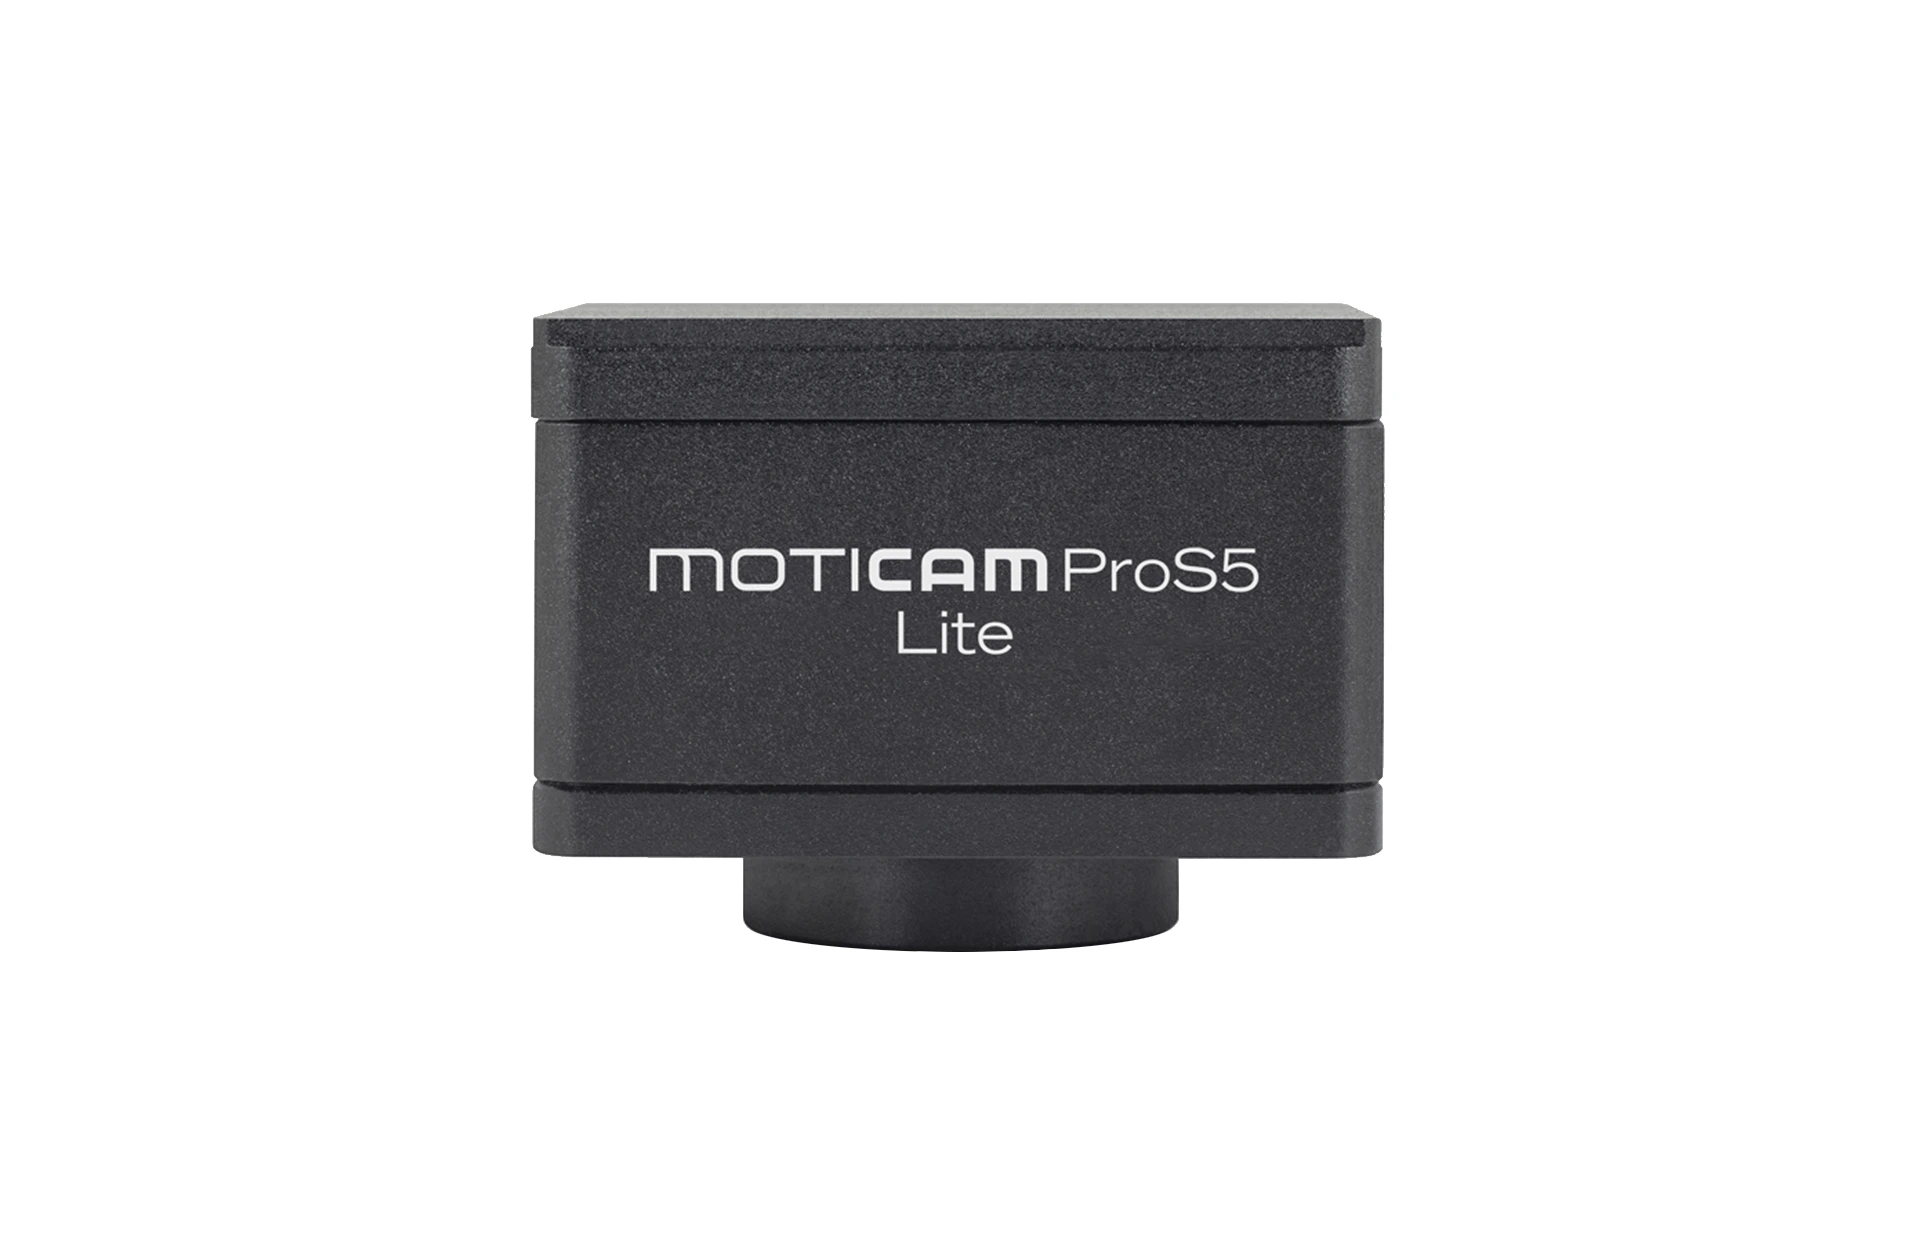 Motic Moticam Pro S5 Lite, frontal